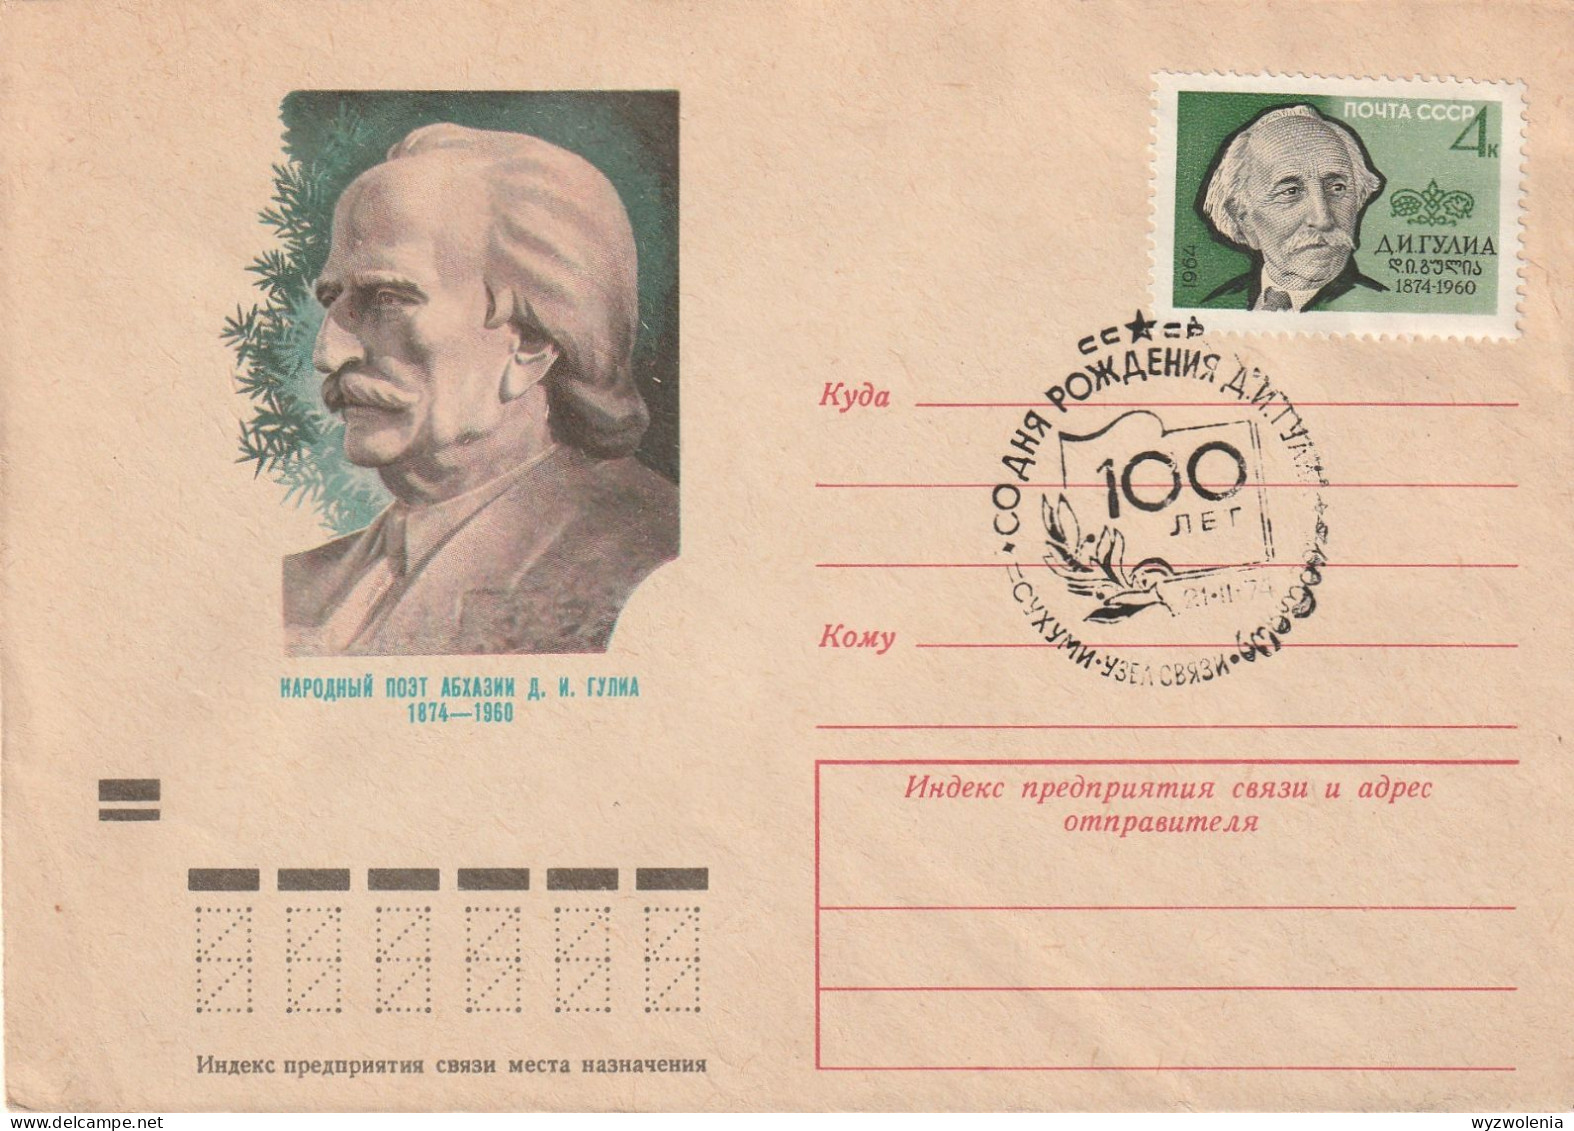 M 1458) UdSSR SSt 1974 Zum 100. Geb. Des Georgischen Dichters GULIA, Mi# 2909 - Covers & Documents